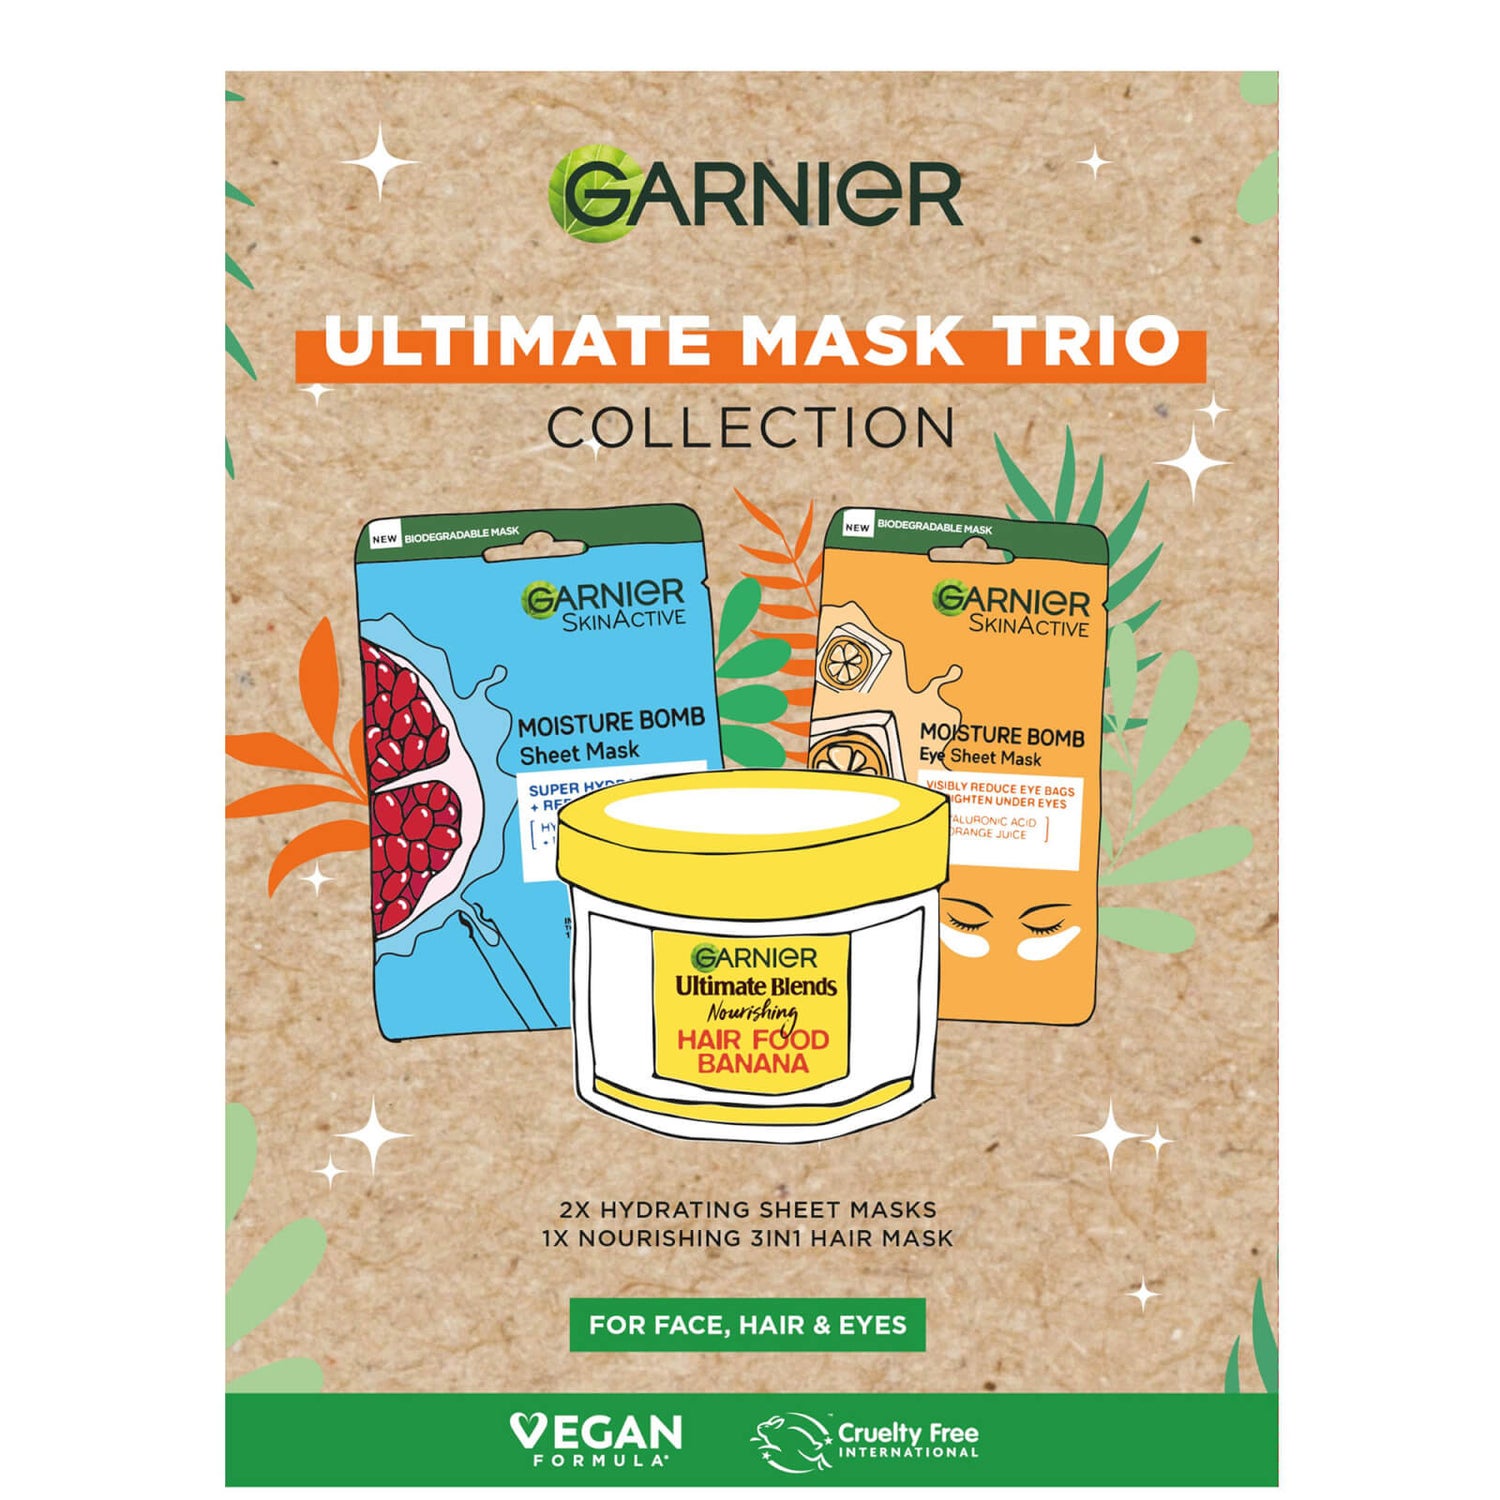 Garnier Ultimate Mask Trio do twarzy, włosów i oczu